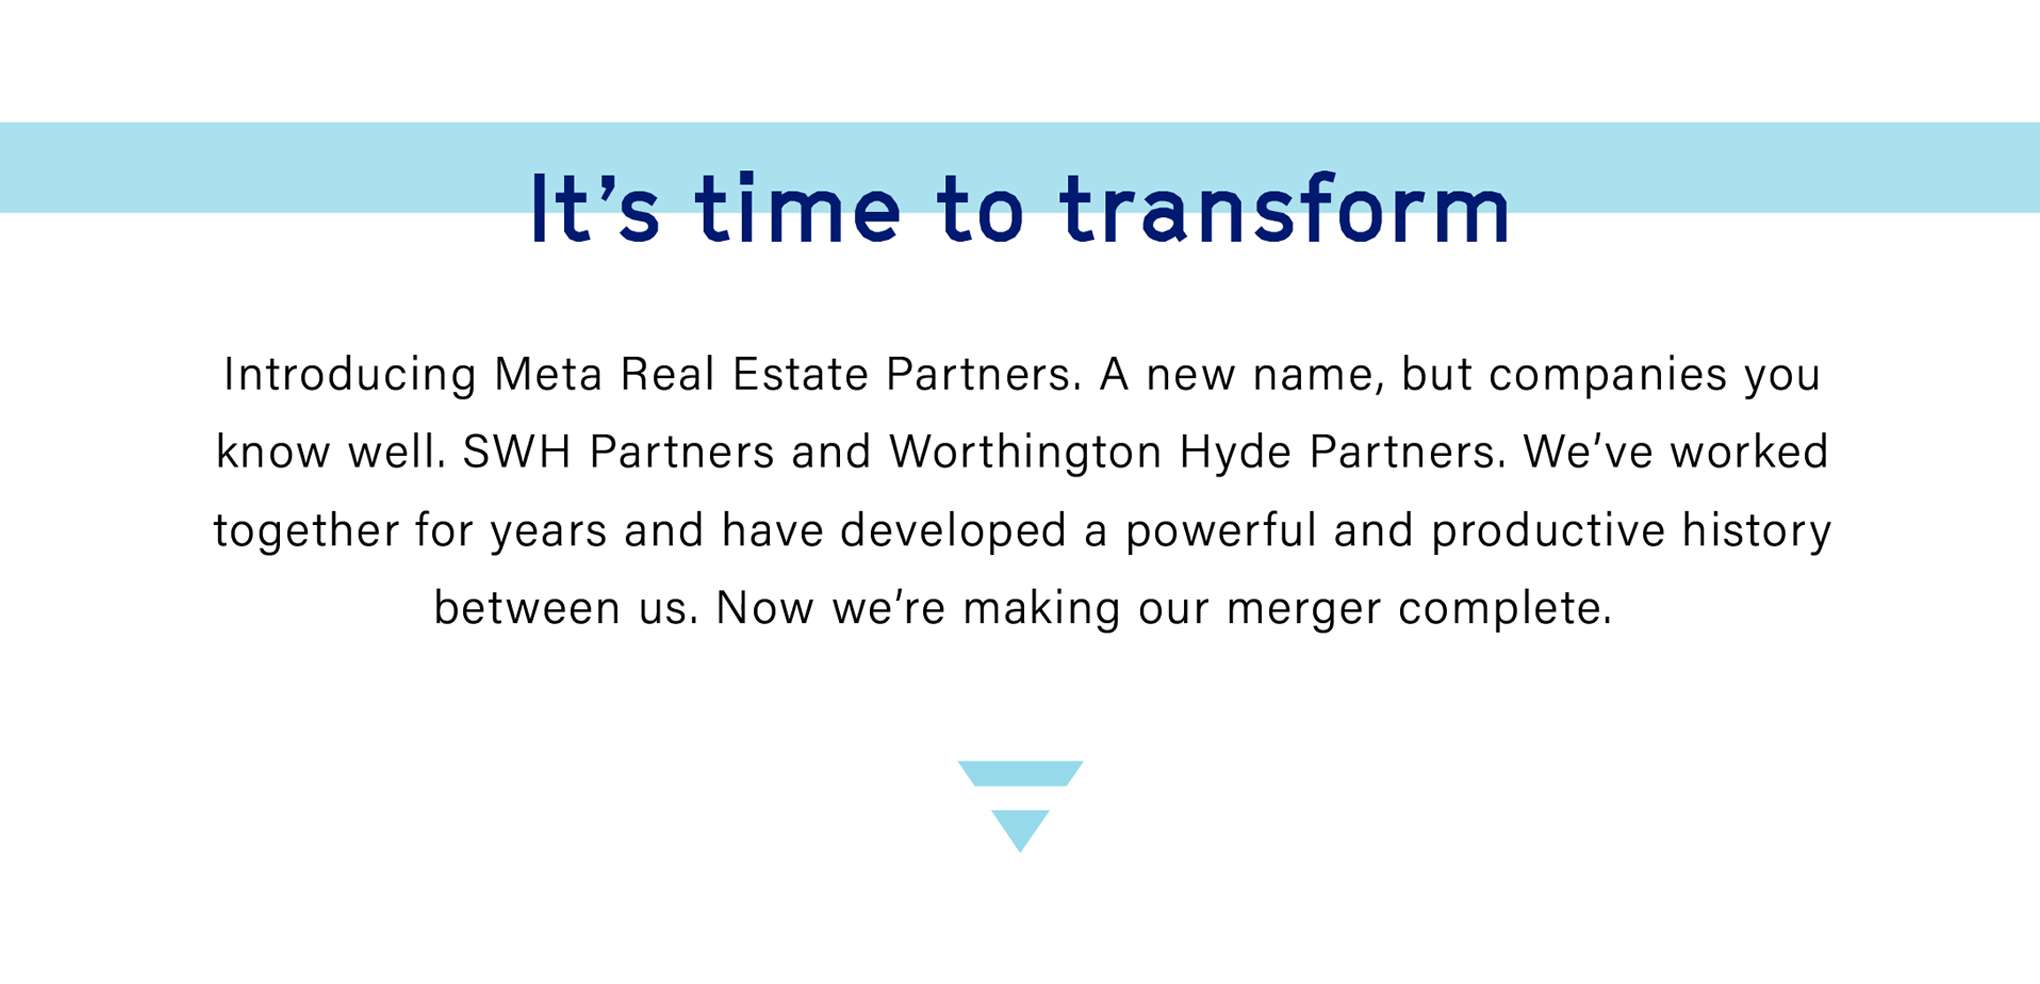 META Real Estate Partners